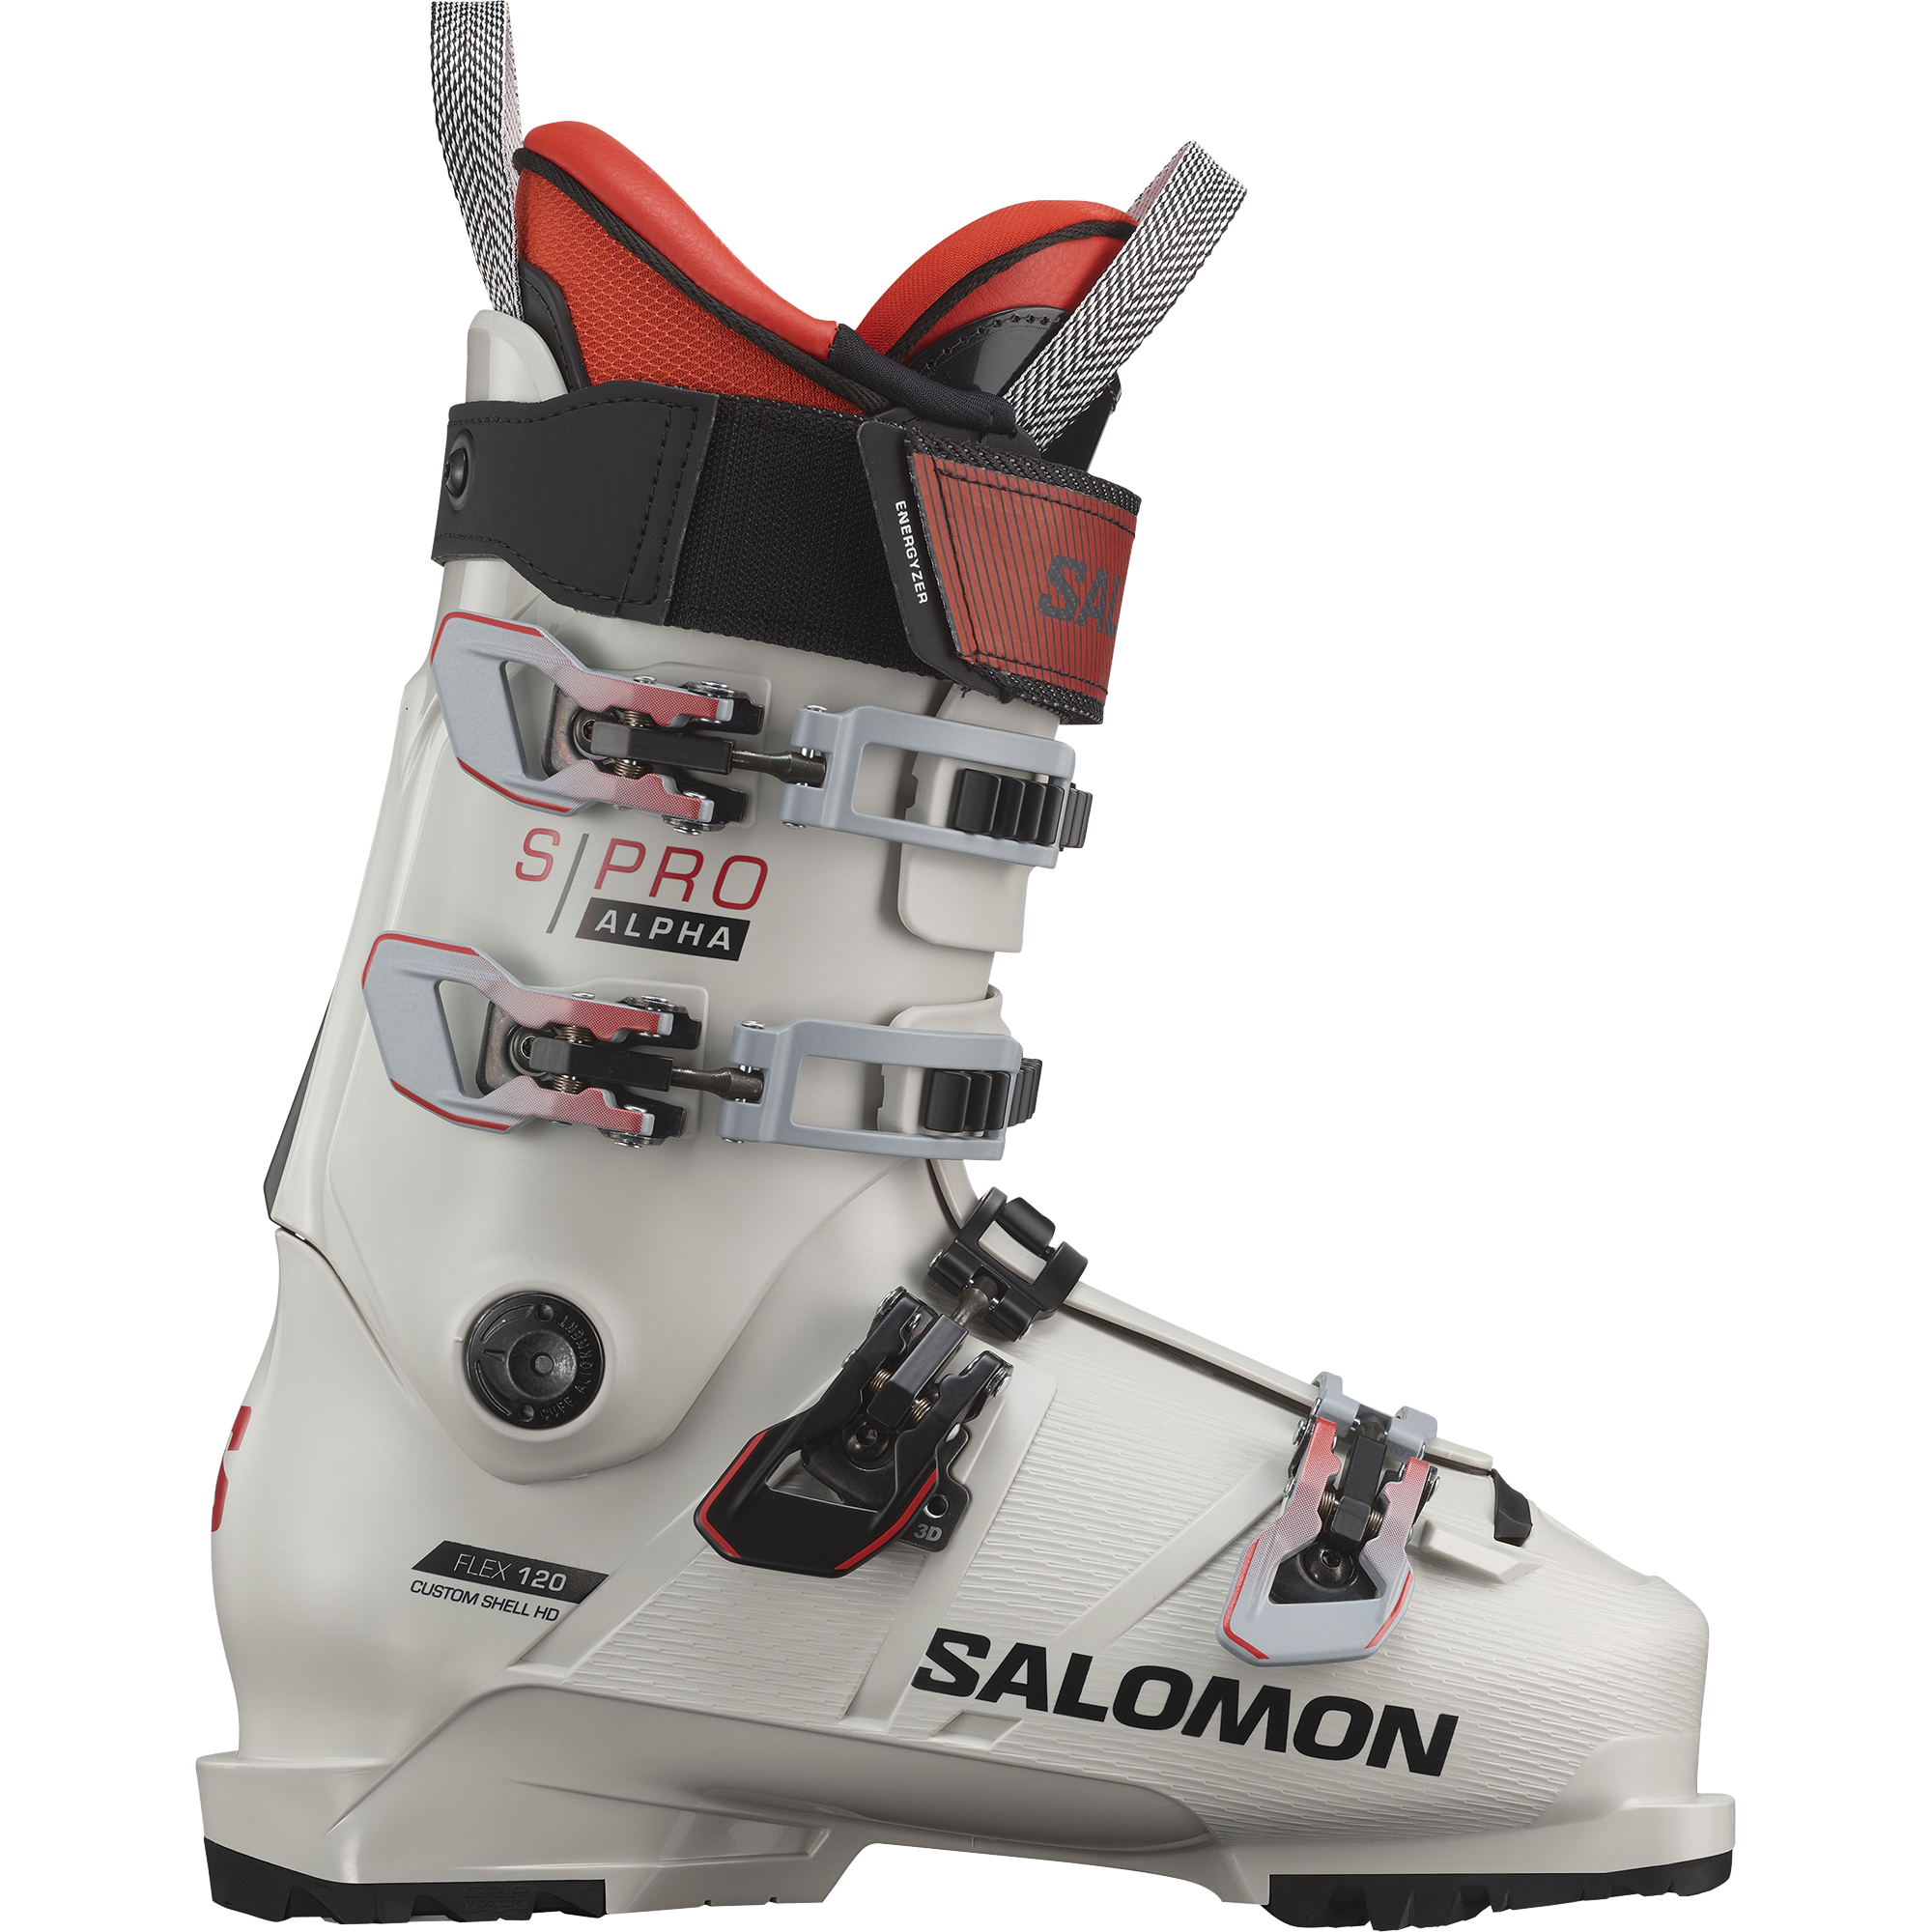 SOLOMON s/pro ALPHA 120 サロモン スキーブーツ 箱付き